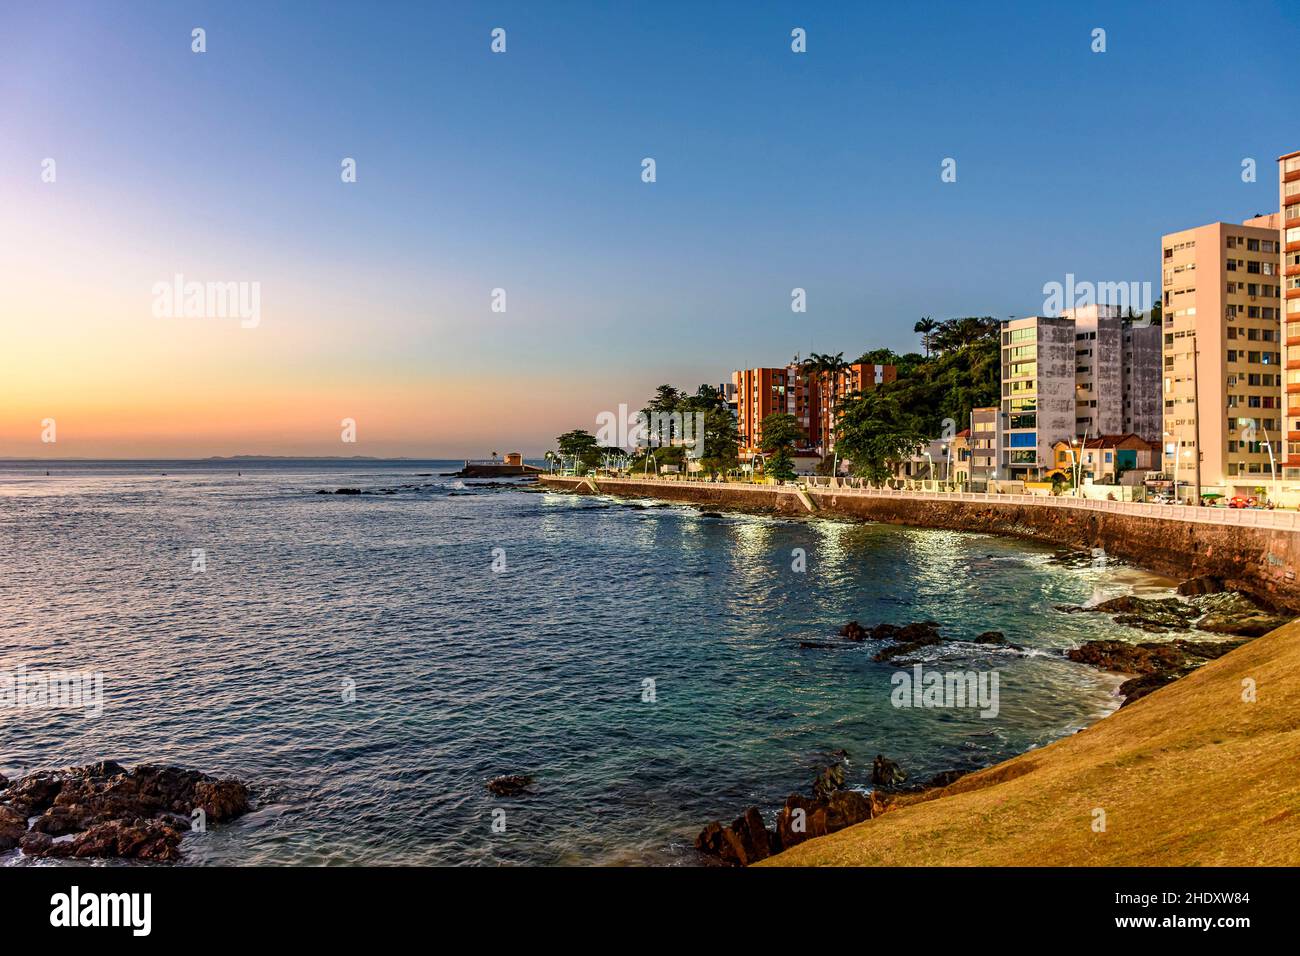 Strandpromenade in der touristischen Region der Stadt Salvador in Bahia während des Sonnenuntergangs mit dem Meer, Gebäuden, Straßen und Gehwegen Stockfoto